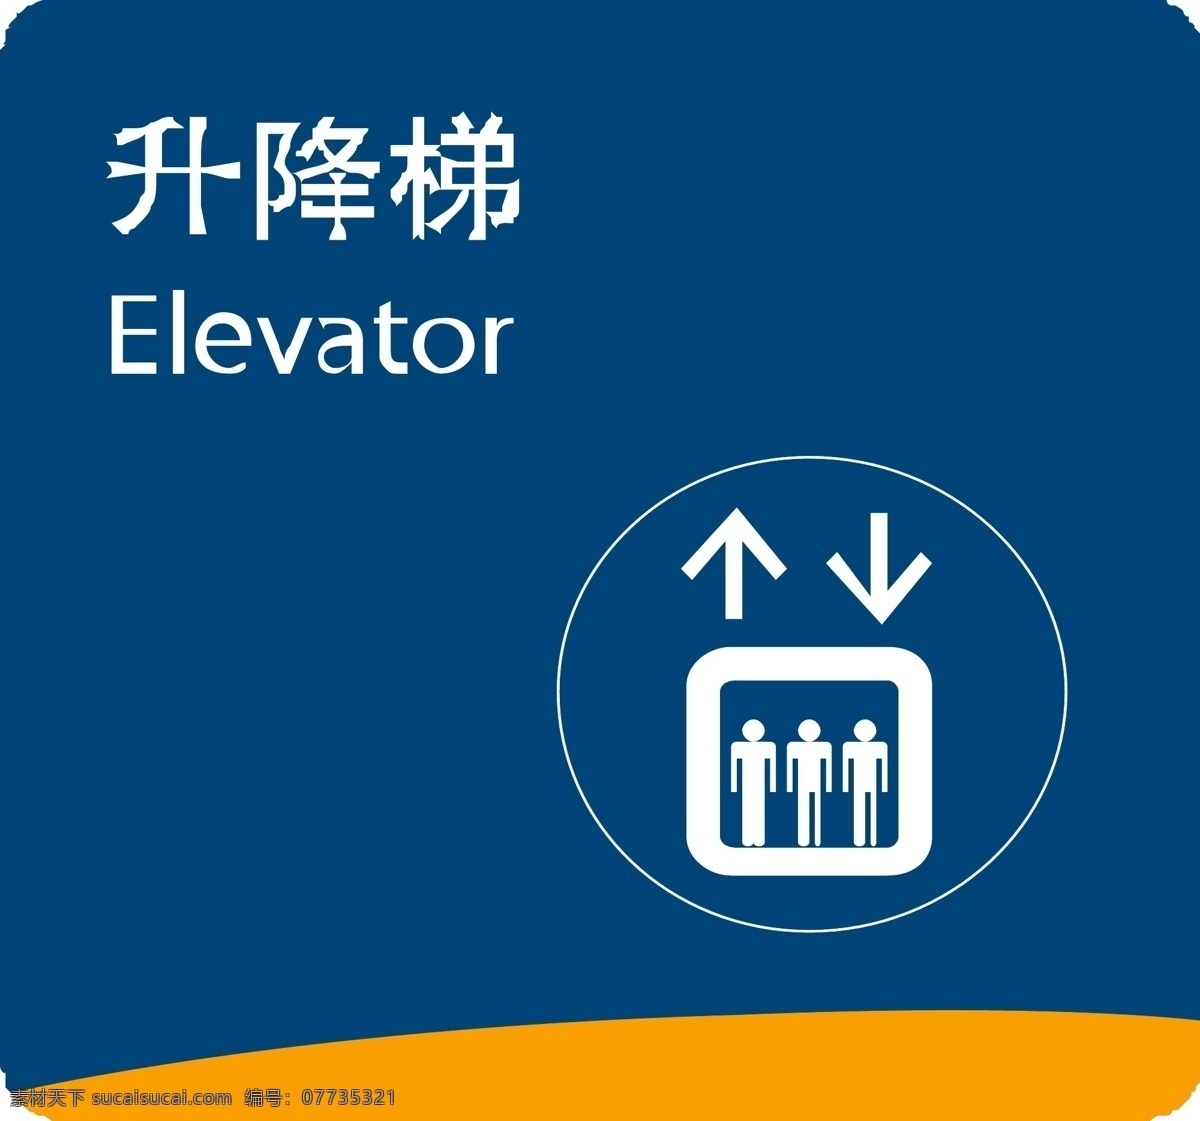 升降梯图片 升降梯 门牌 导视牌 标示 导视图 指示牌 电梯 标志 标志图标 其他图标